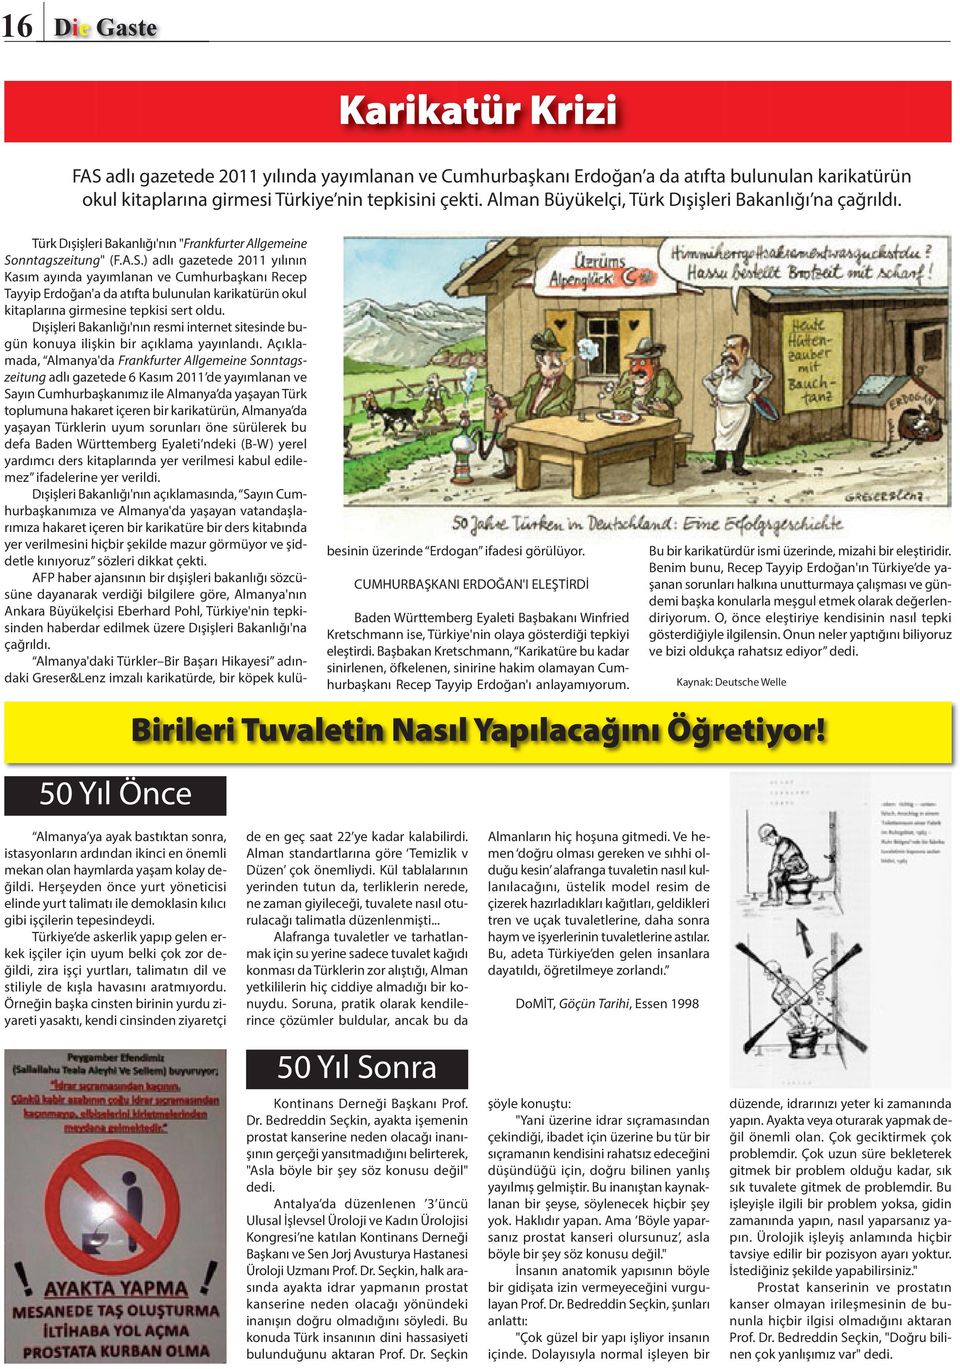 nntagszeitung" (F.A.S.) adlı gazetede 2011 yılının Kasım ayında yayımlanan ve Cumhurbaşkanı Recep Tayyip Erdoğan'a da atıfta bulunulan karikatürün okul kitaplarına girmesine tepkisi sert oldu.